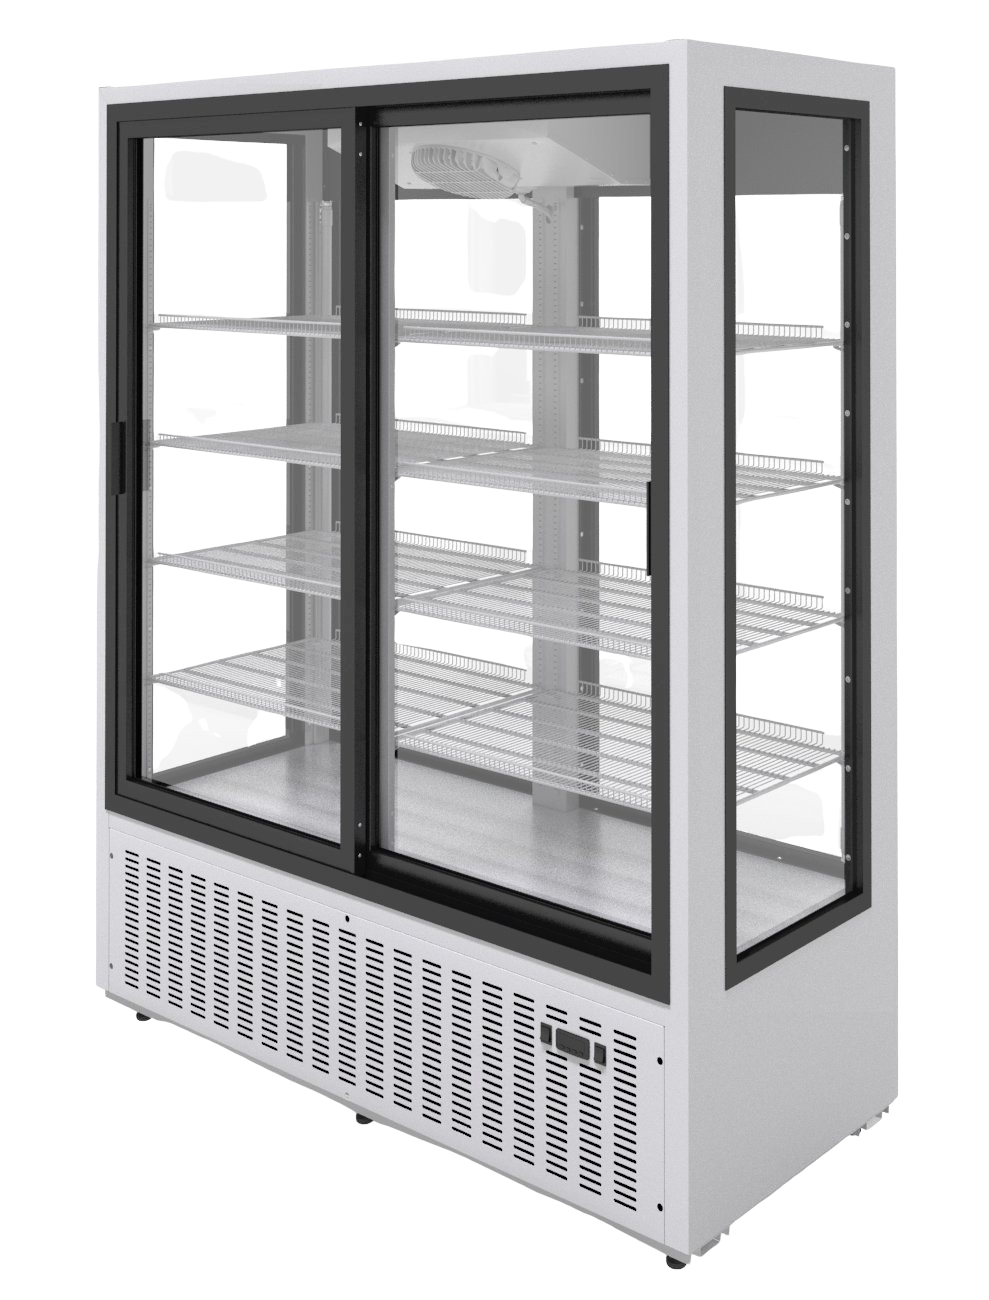 Холодильный шкаф МХМ Эльтон 1,5С купе